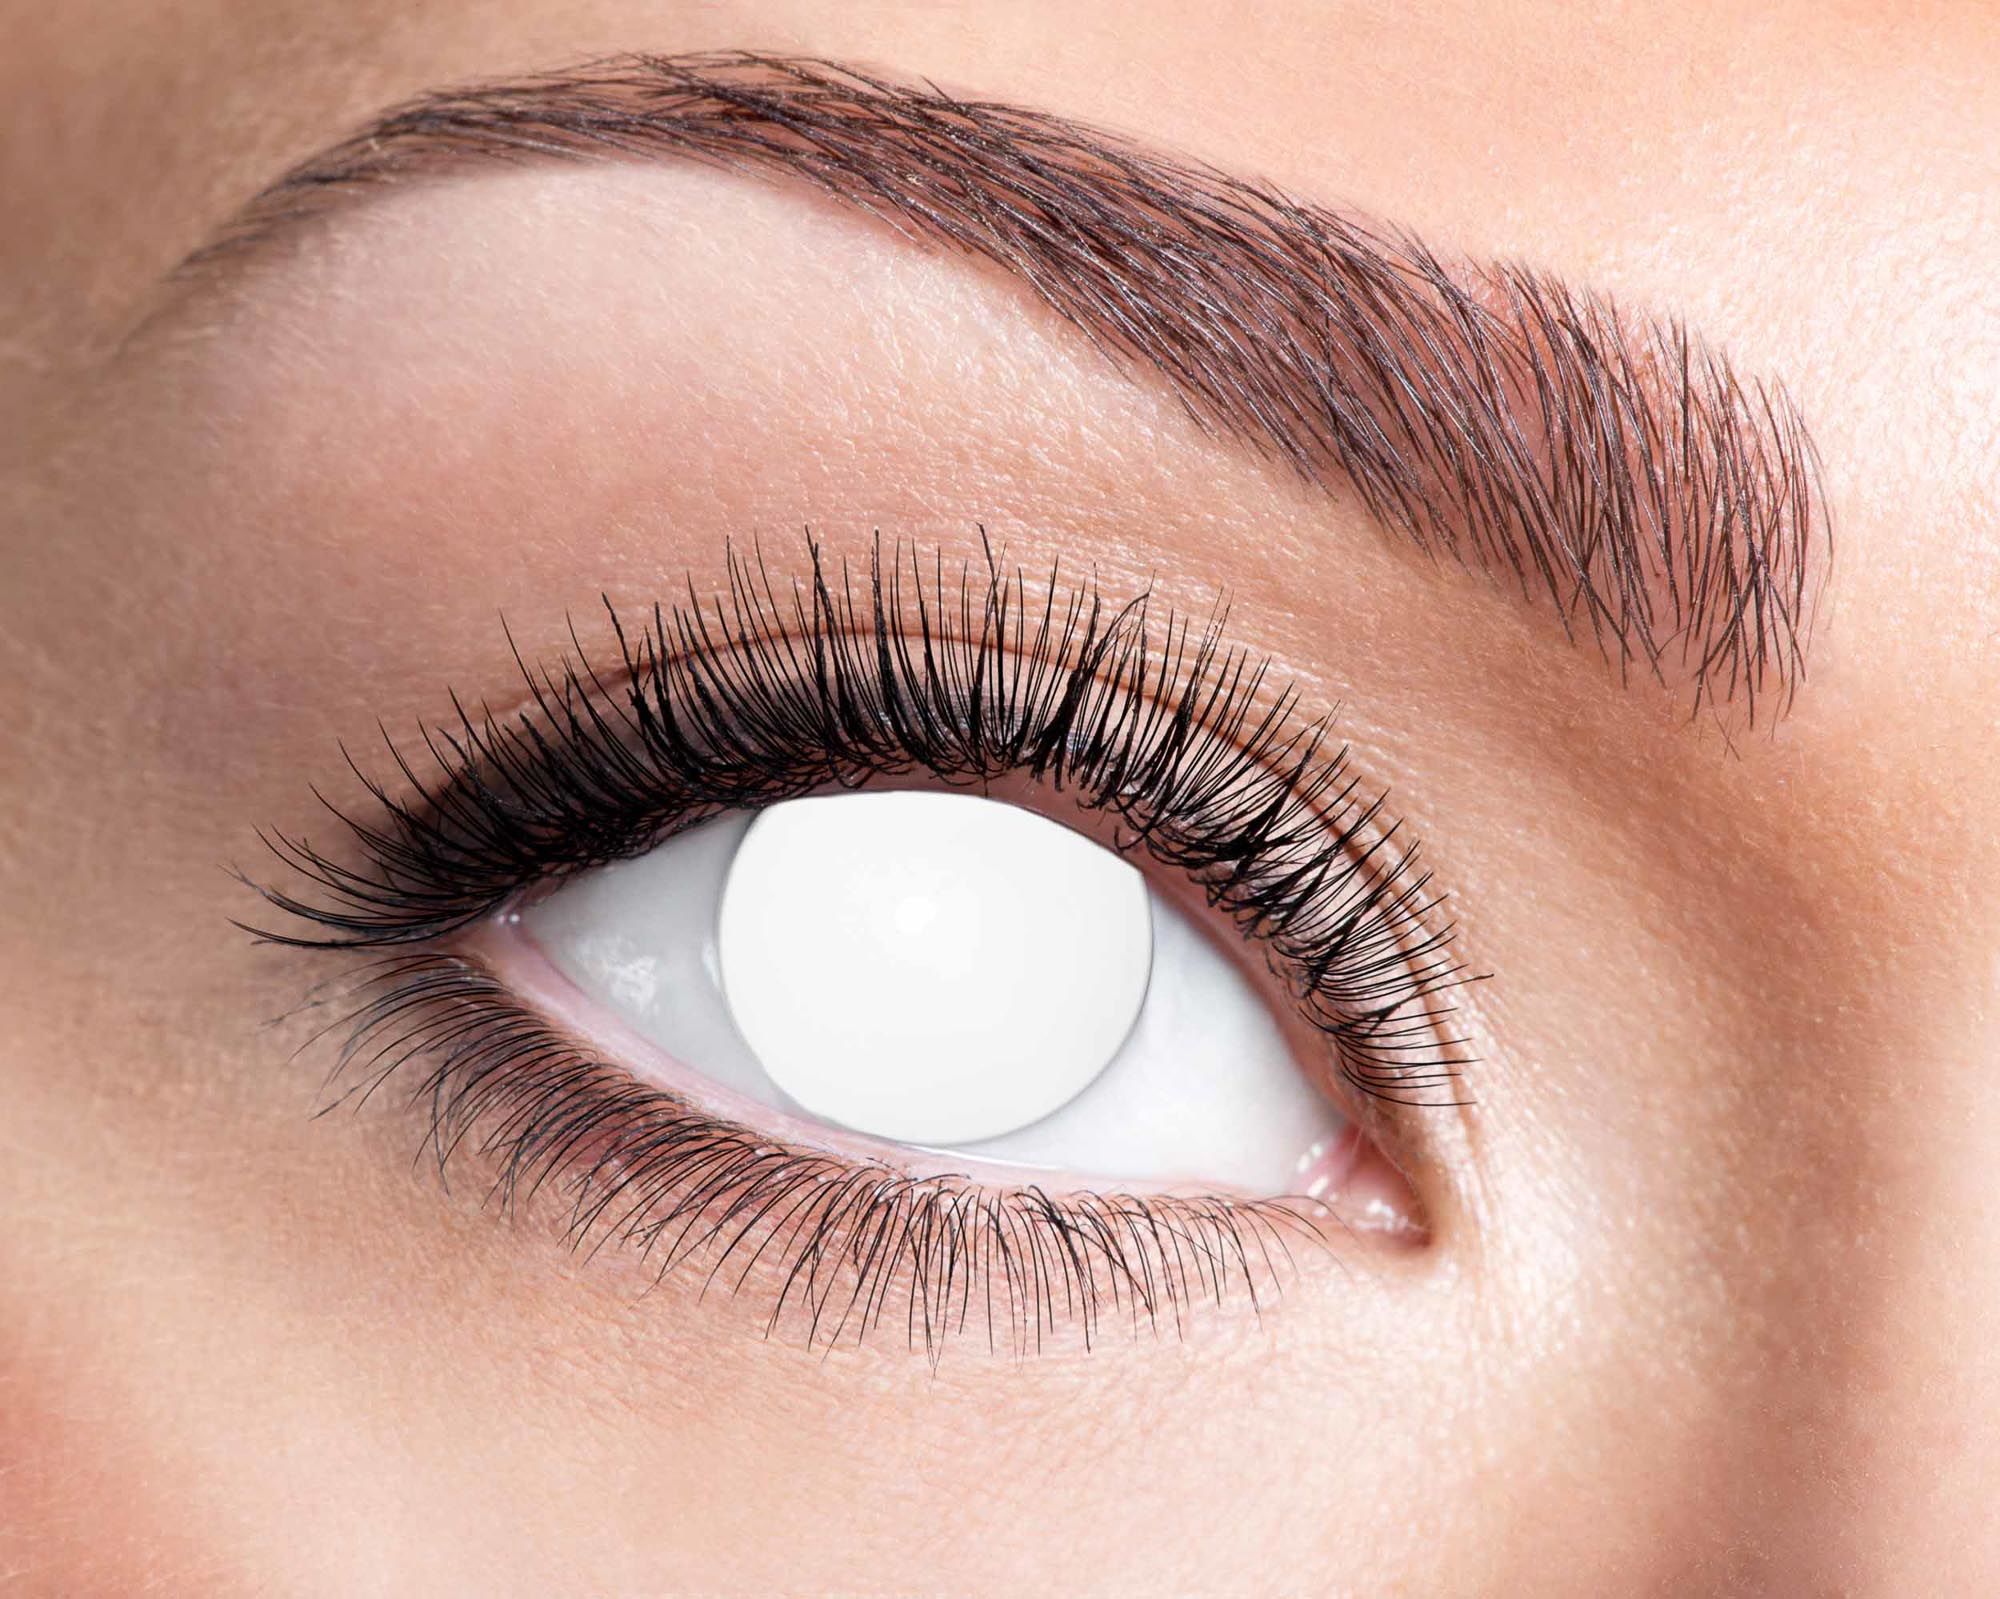 Certifikované tříměsíční neprůhledné kontaktní čočky nedioptrické Blind White 84092041.M21 - Blind white